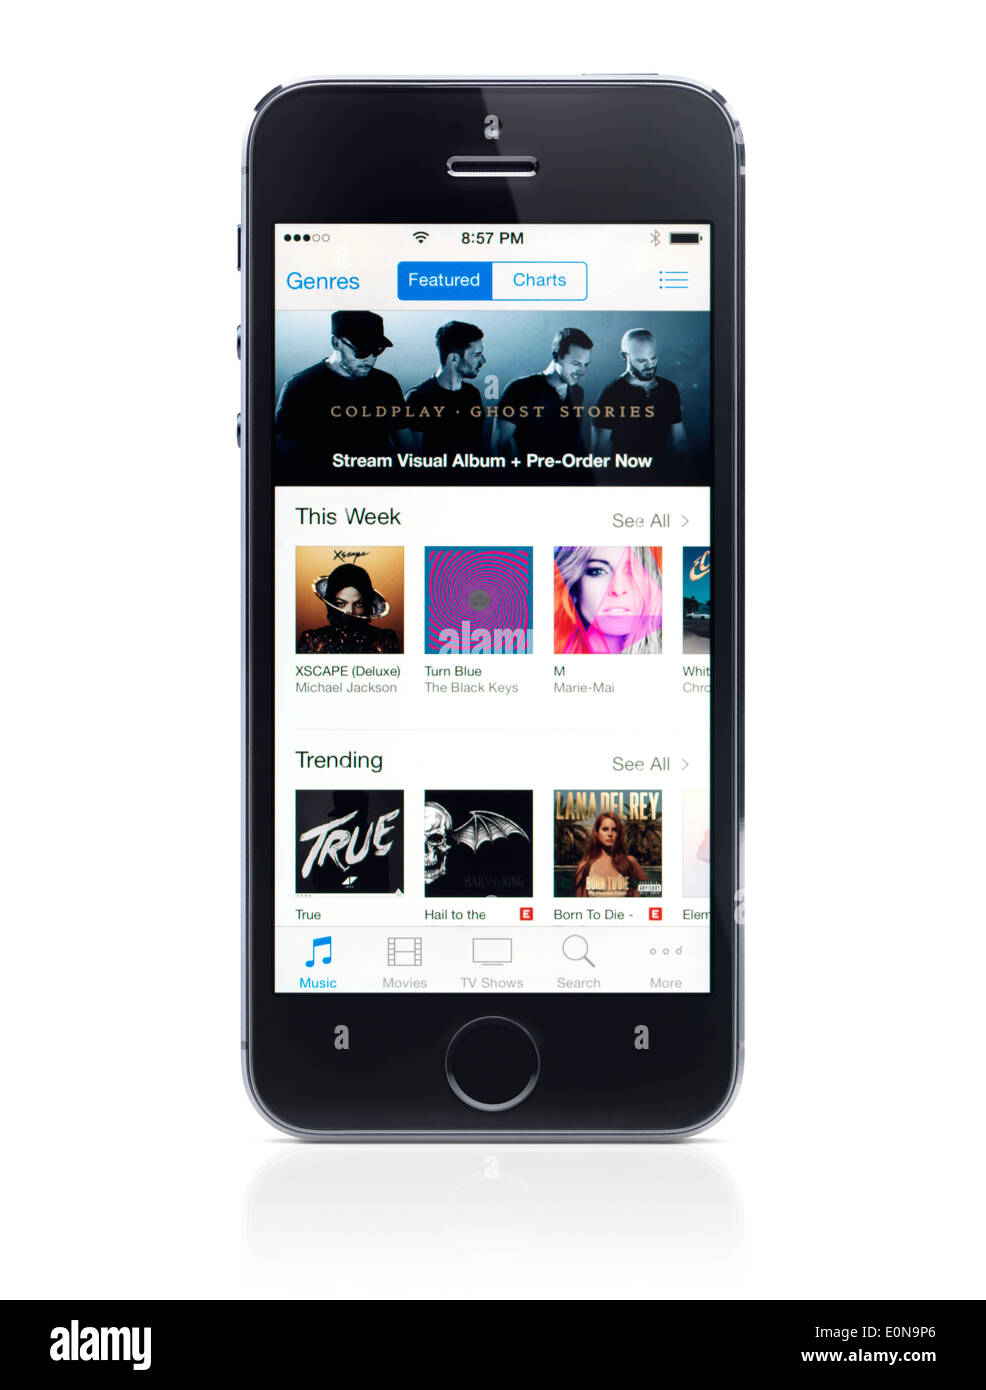 L'iPhone 5s d'Apple avec iTunes music store sur son affichage isolé sur fond blanc avec clipping path Banque D'Images